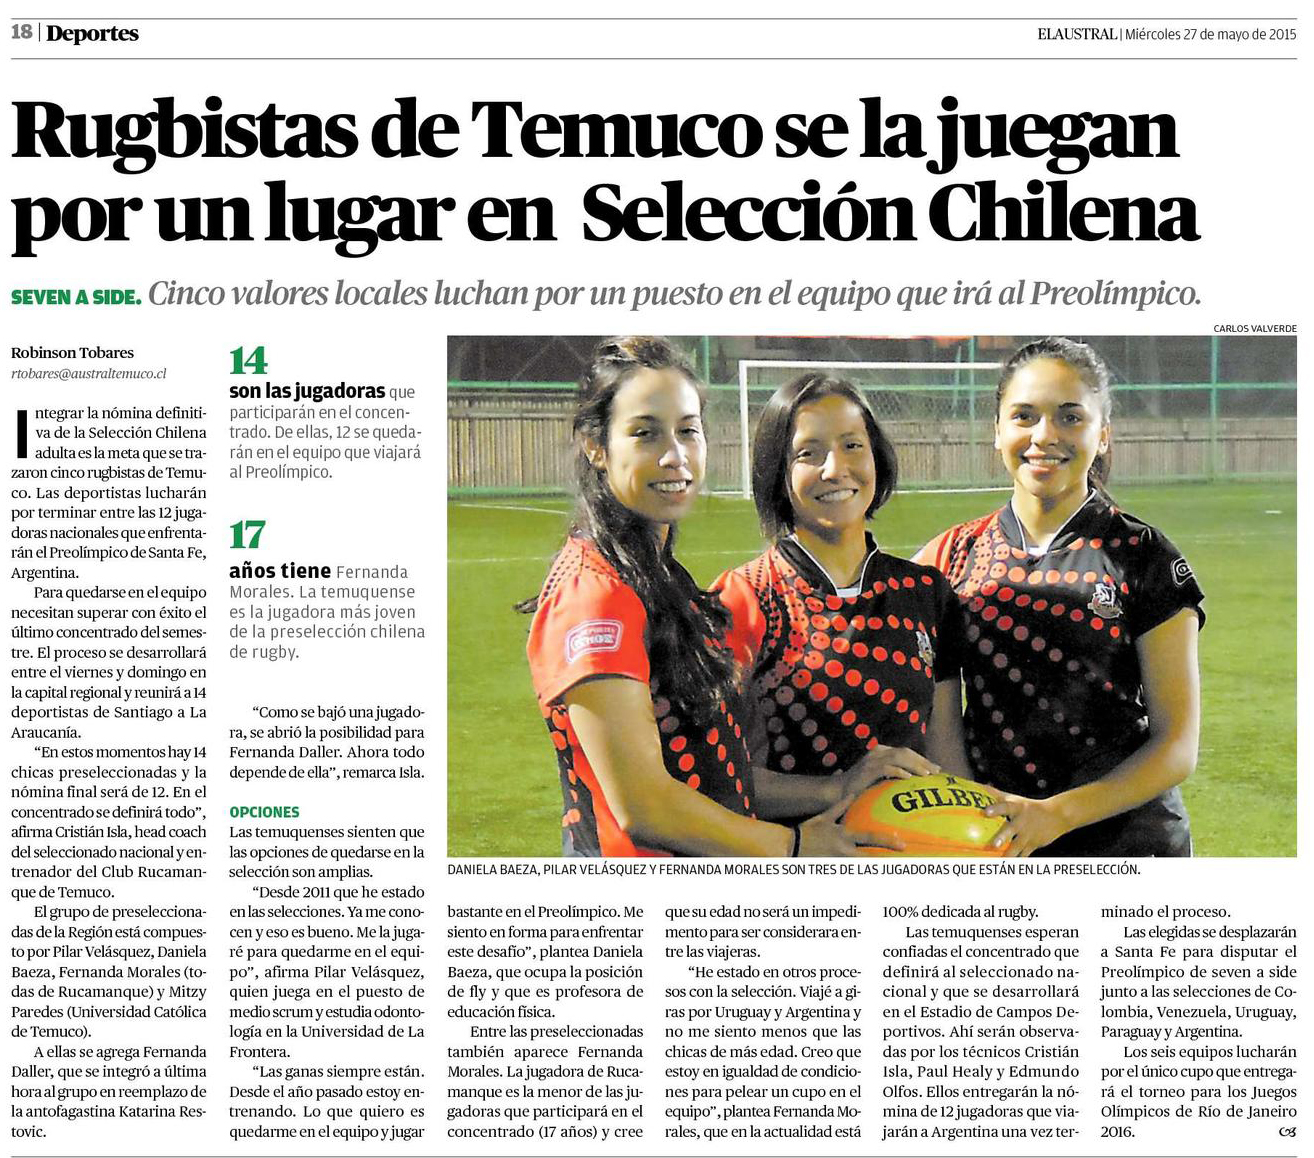 27-05-2015 Rugbistas de Temuco se la juegan por un lugar en Selección Chilena